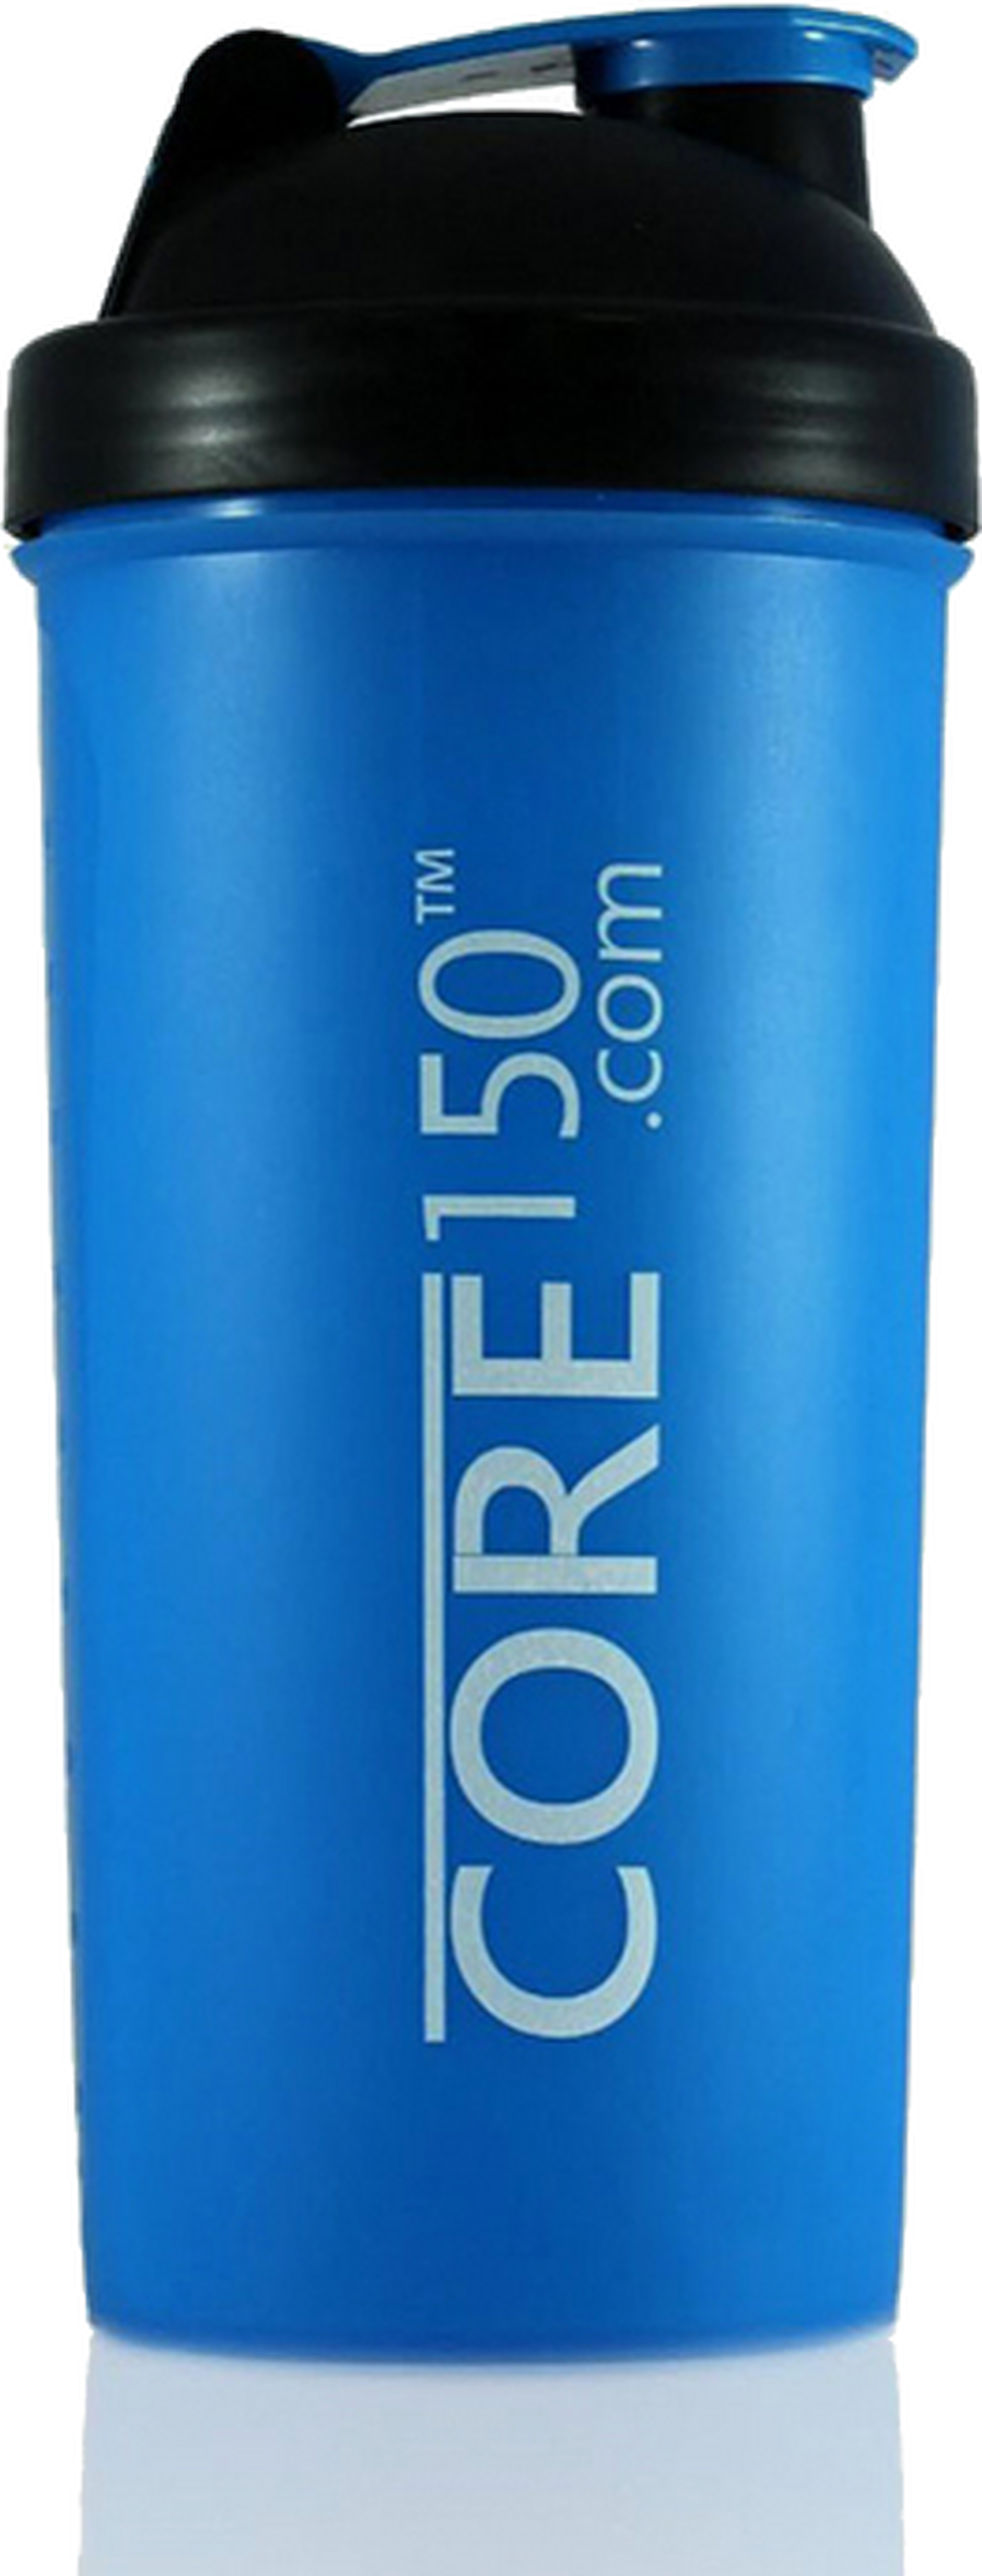 زجاجة إعداد مسحوق البروتين كور١٥٠ - أزرق